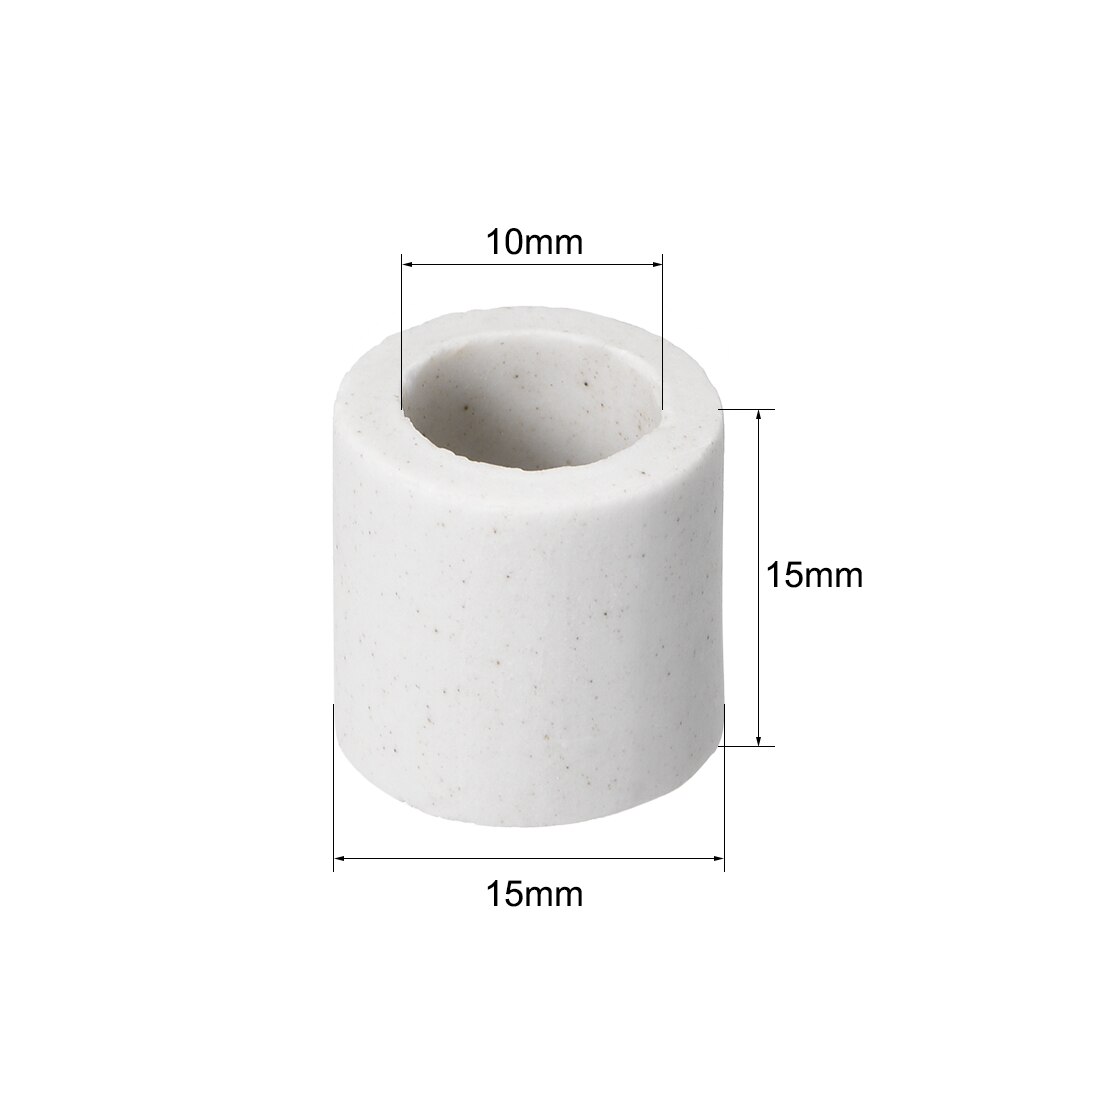 Uxcell 10 stk 10mm dia keramisk isoleringsrør enkeltboret porcelæns isolatorrør til varmeelement